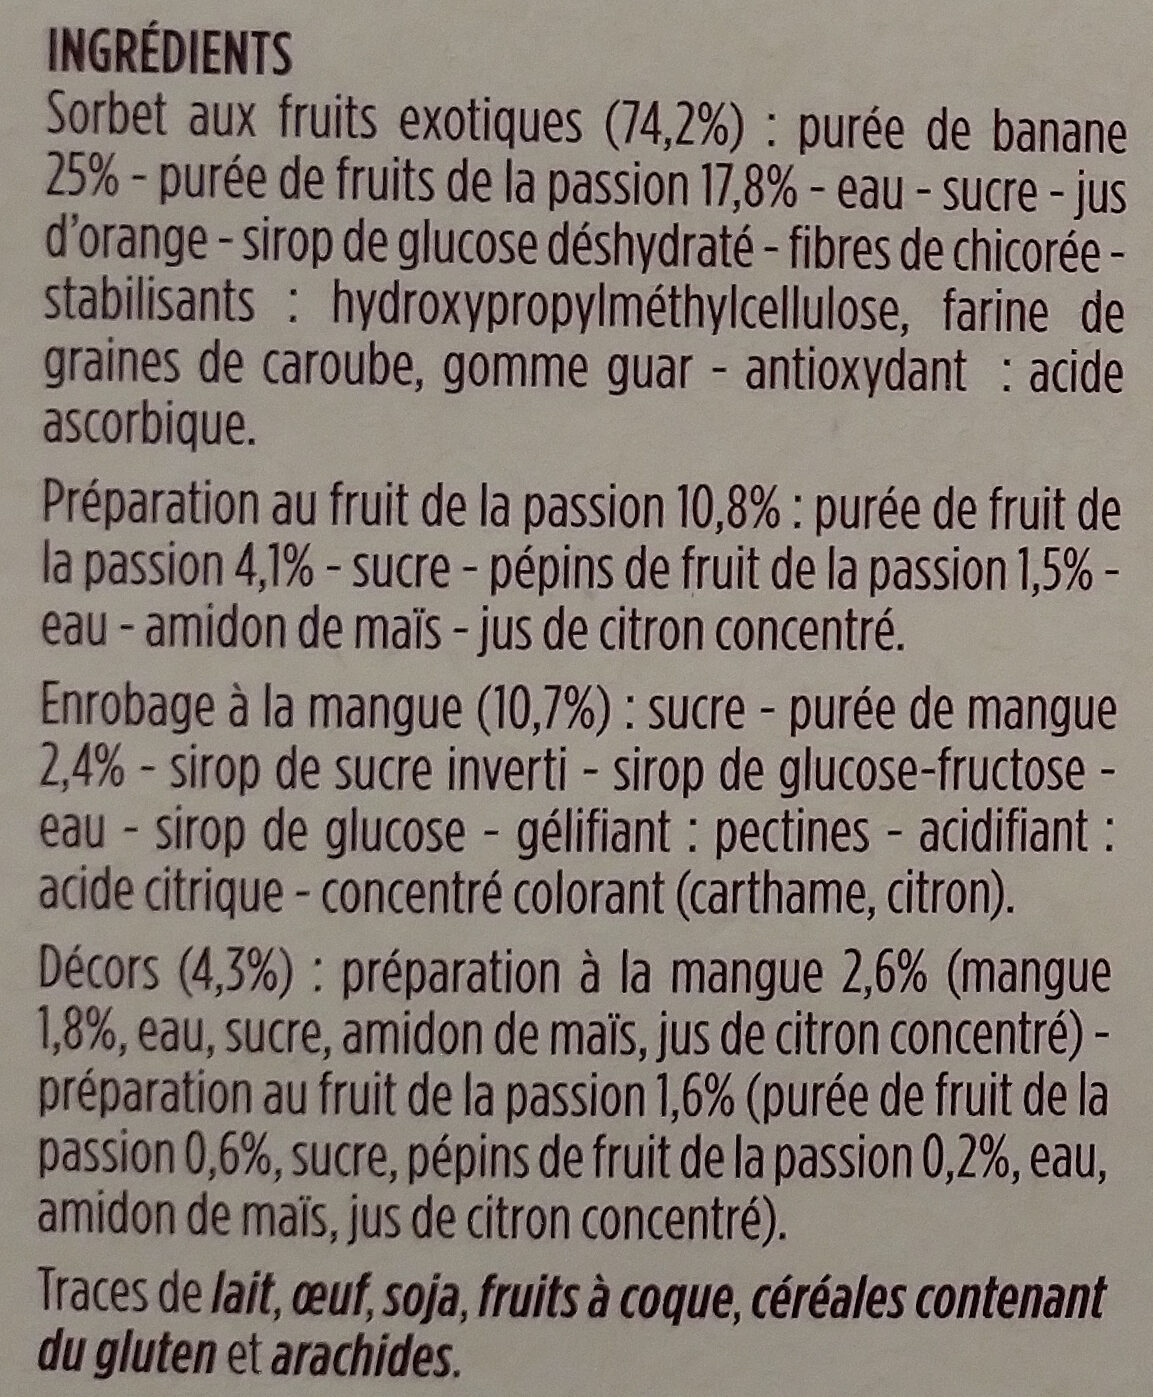 Buchettes glacees sorbet banane et fruit de la passion - Ingredients - fr